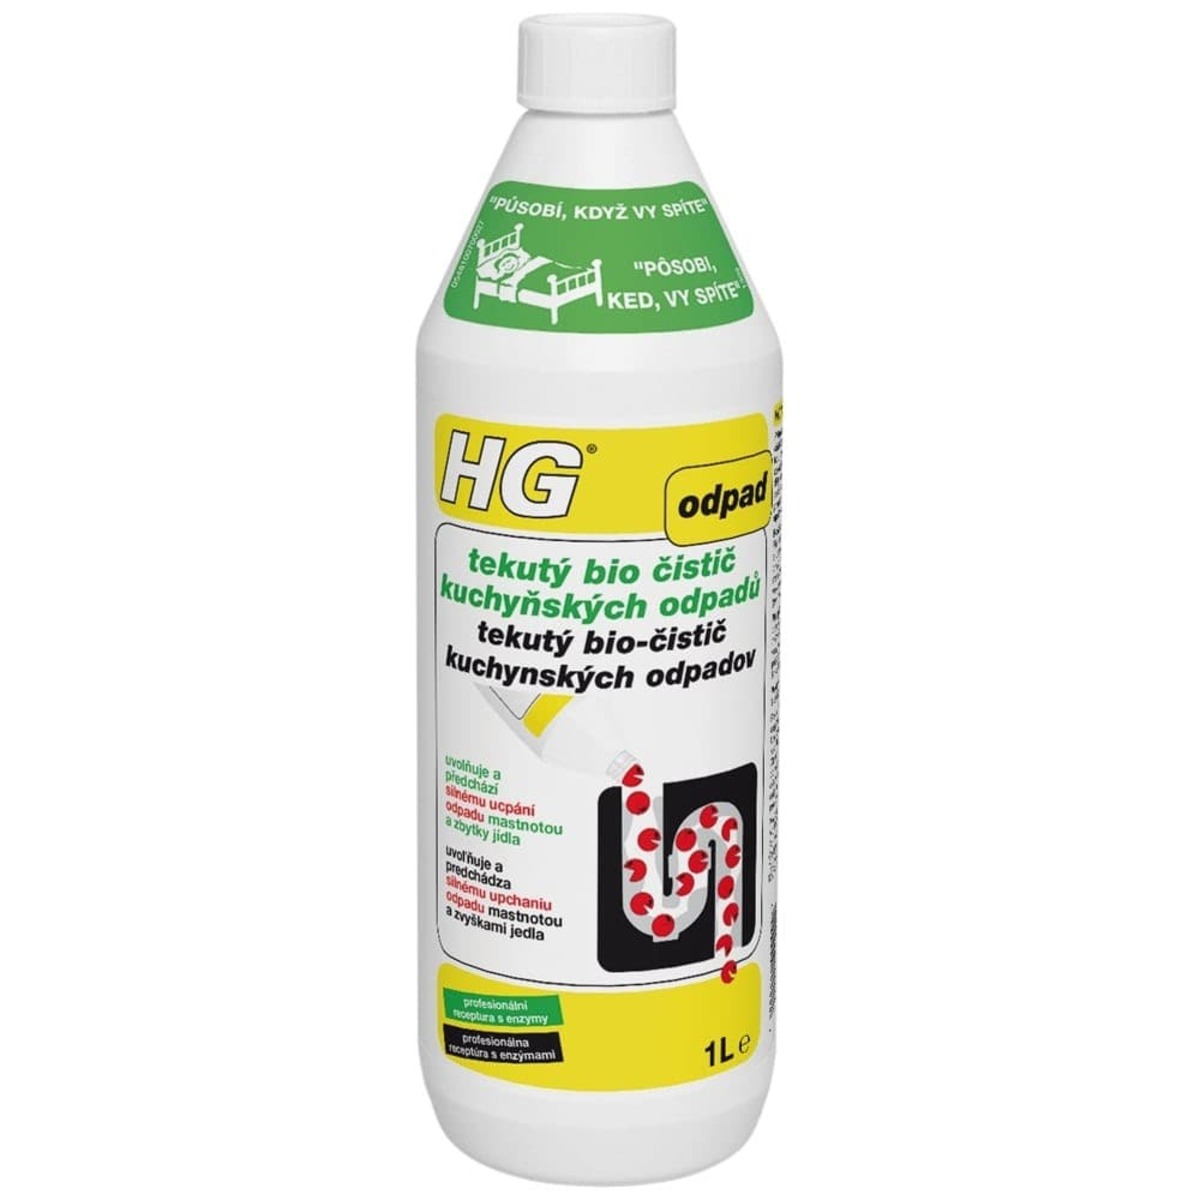 HG tekutý bio čistič kuchyňských odpadů HGTBCKO1 HG